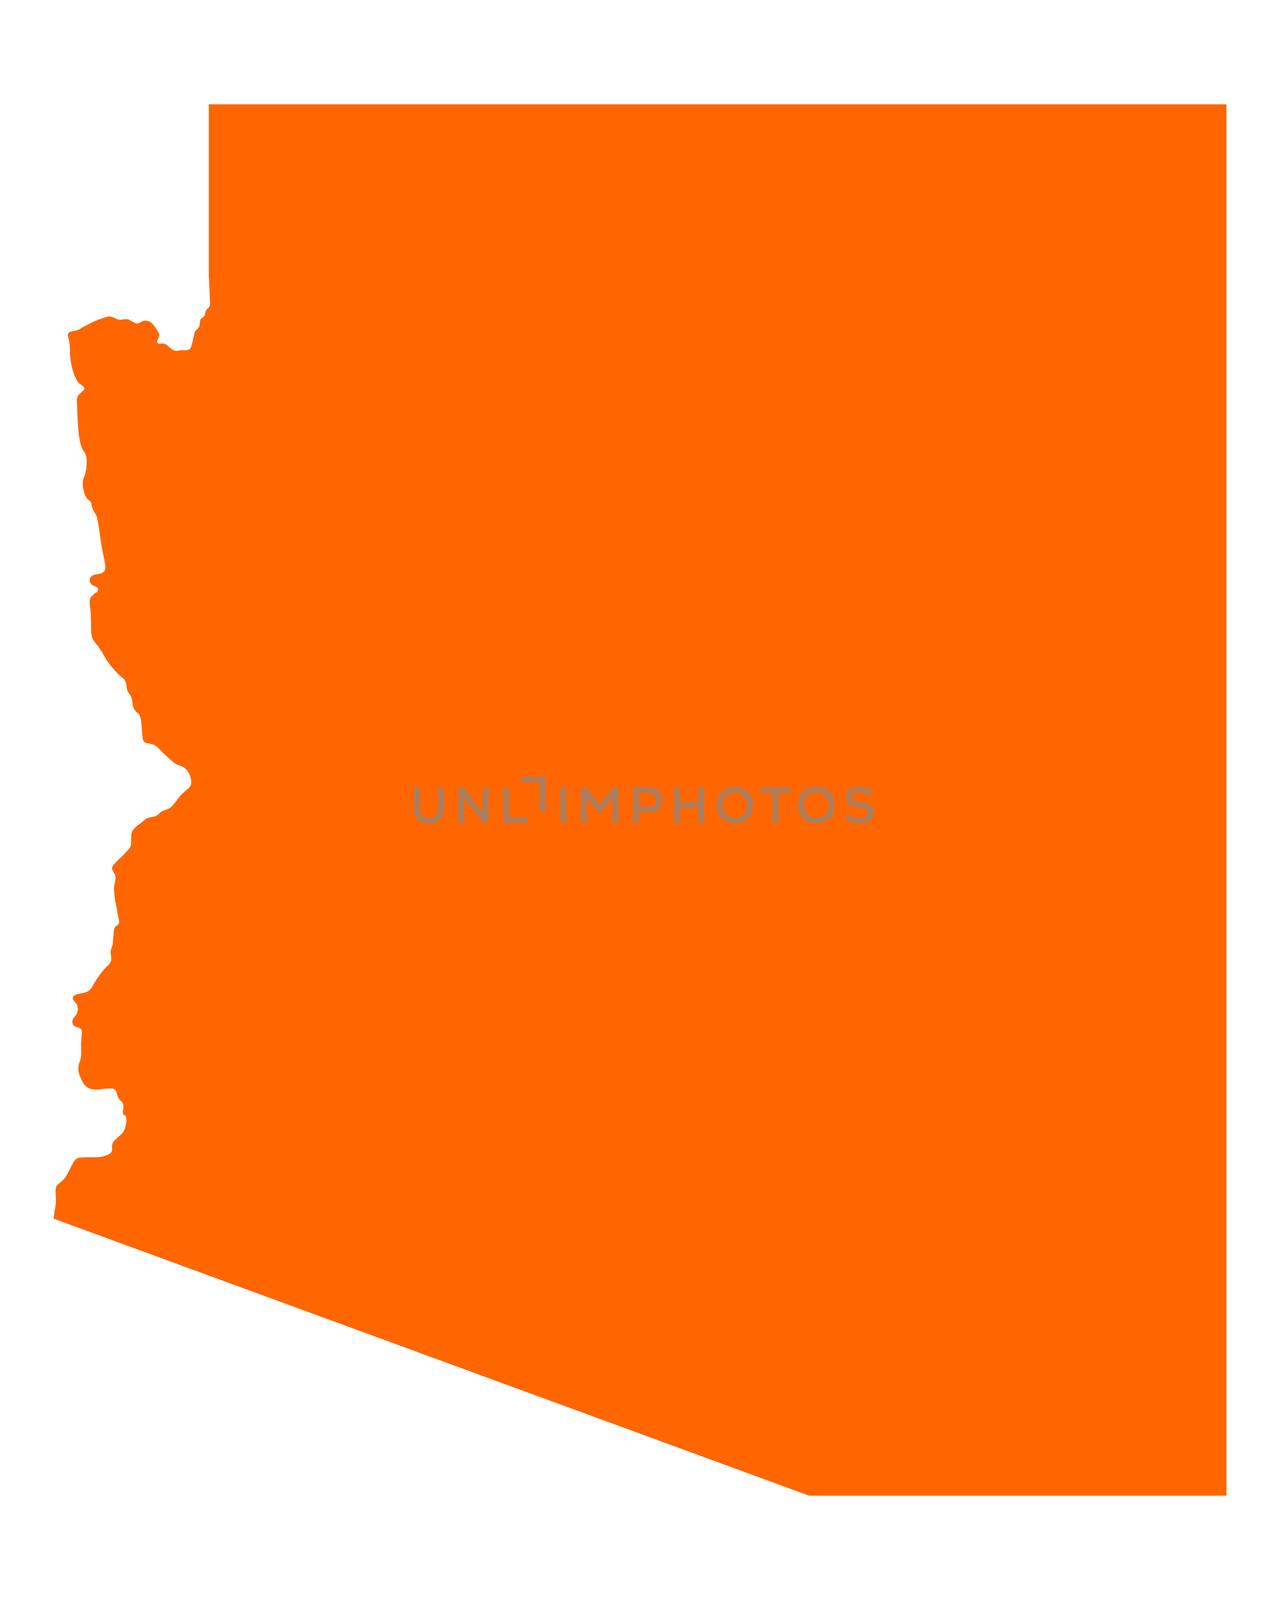 Map of Arizona by rbiedermann